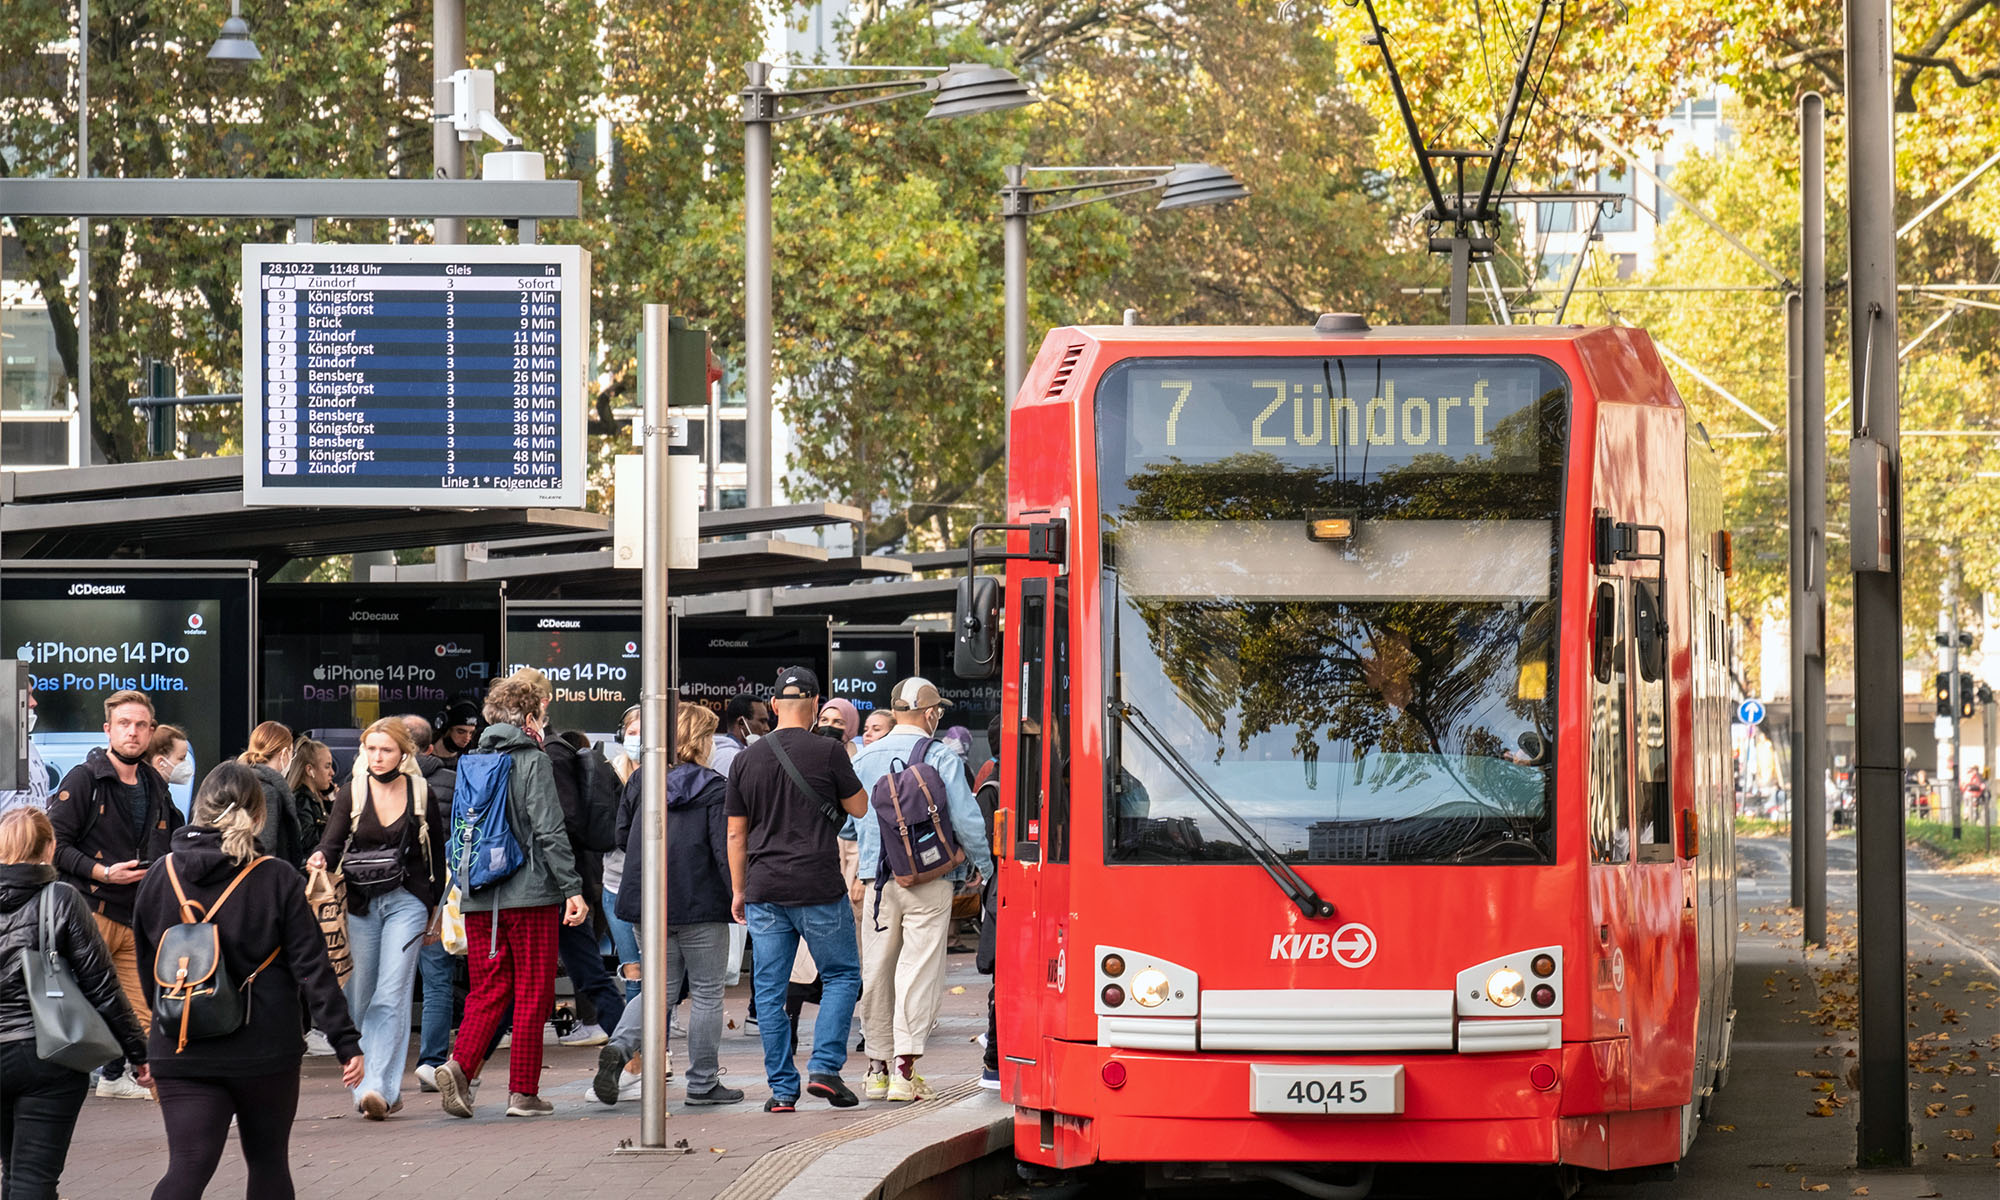 Fahrgäste betreten eine KVB-Stadtbahn der Linie 7, die an einer Haltestelle steht.